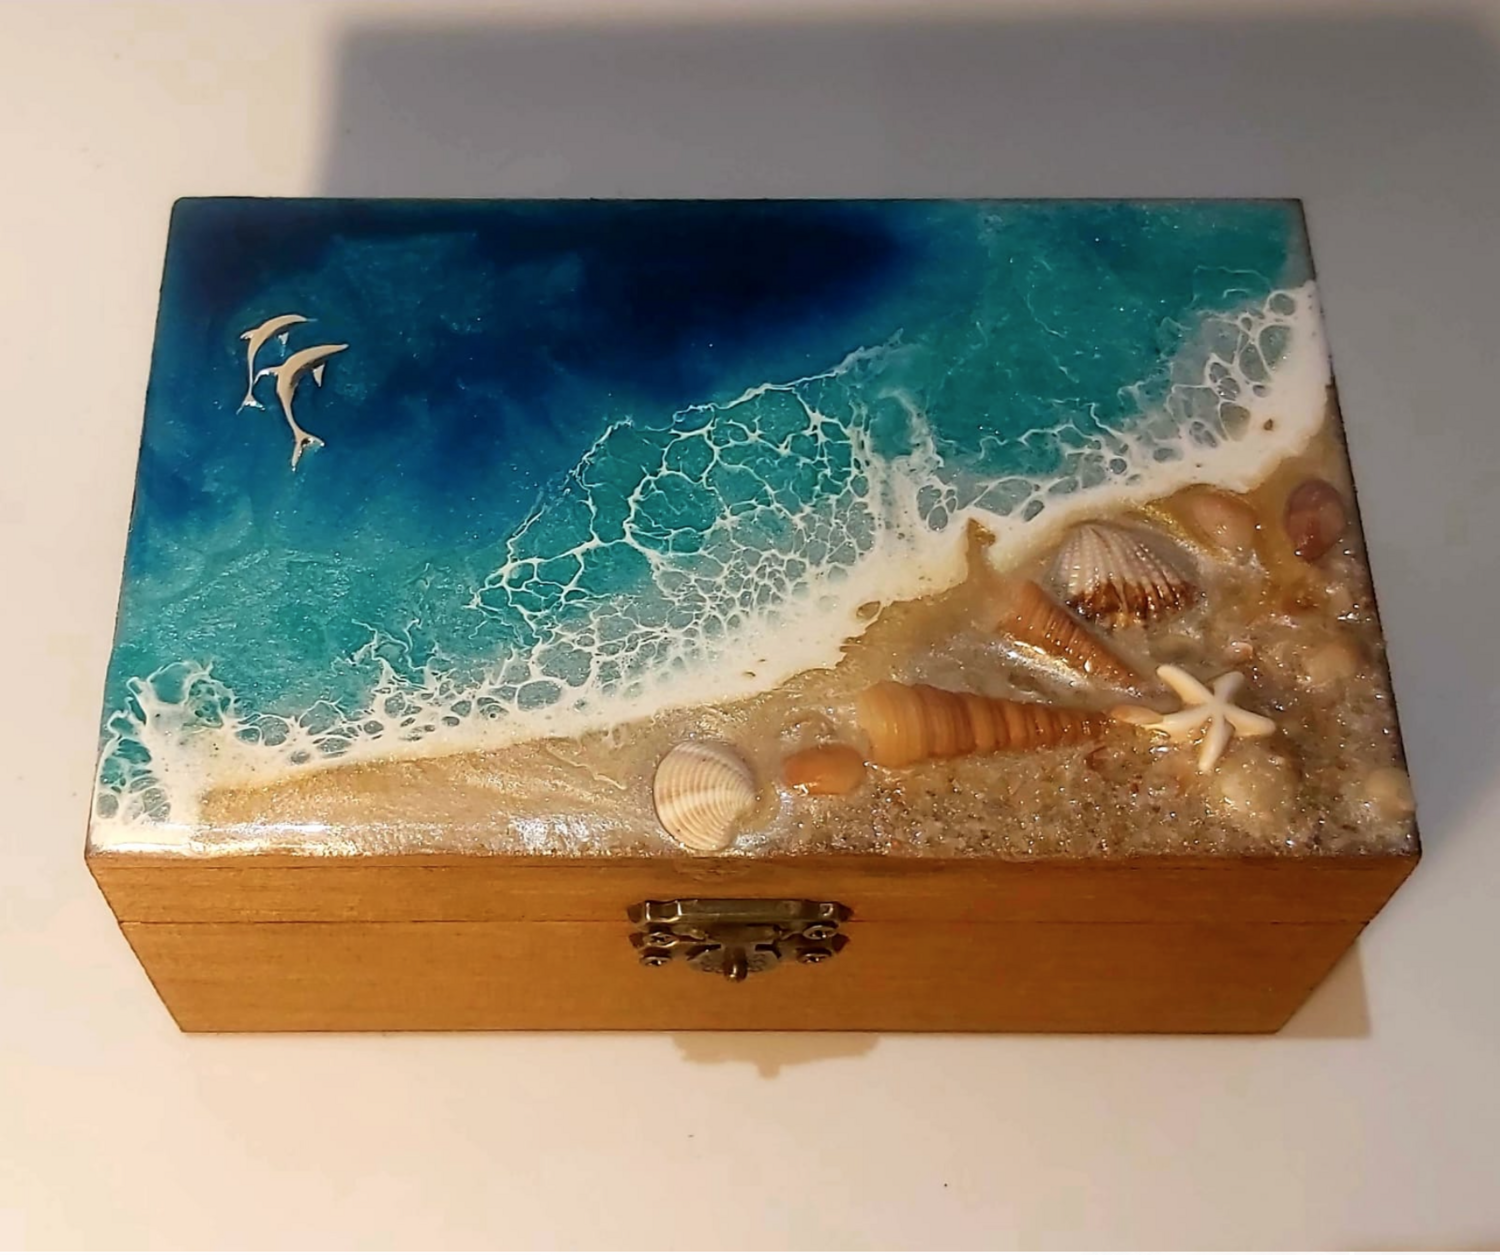 Joyero de mar turquesa rectangular.
15 * 9 * 6 cm